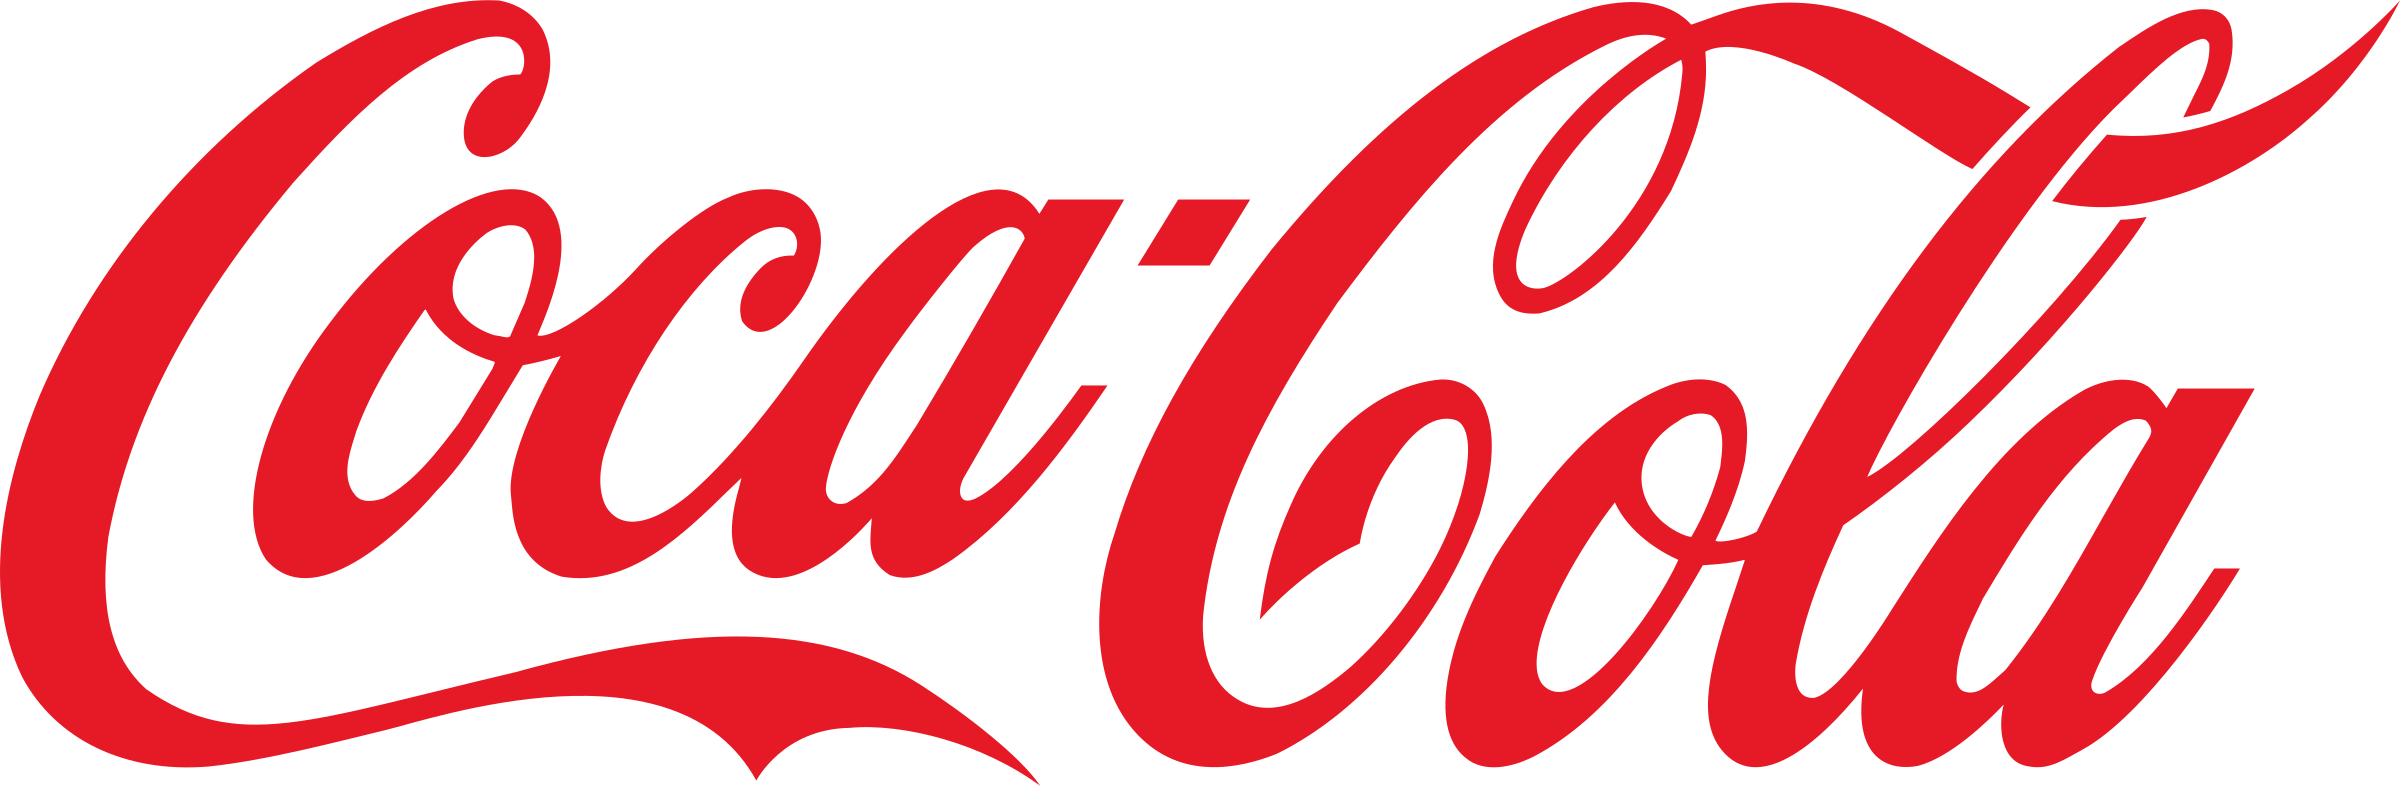 coca-cola-logo-png-transparent